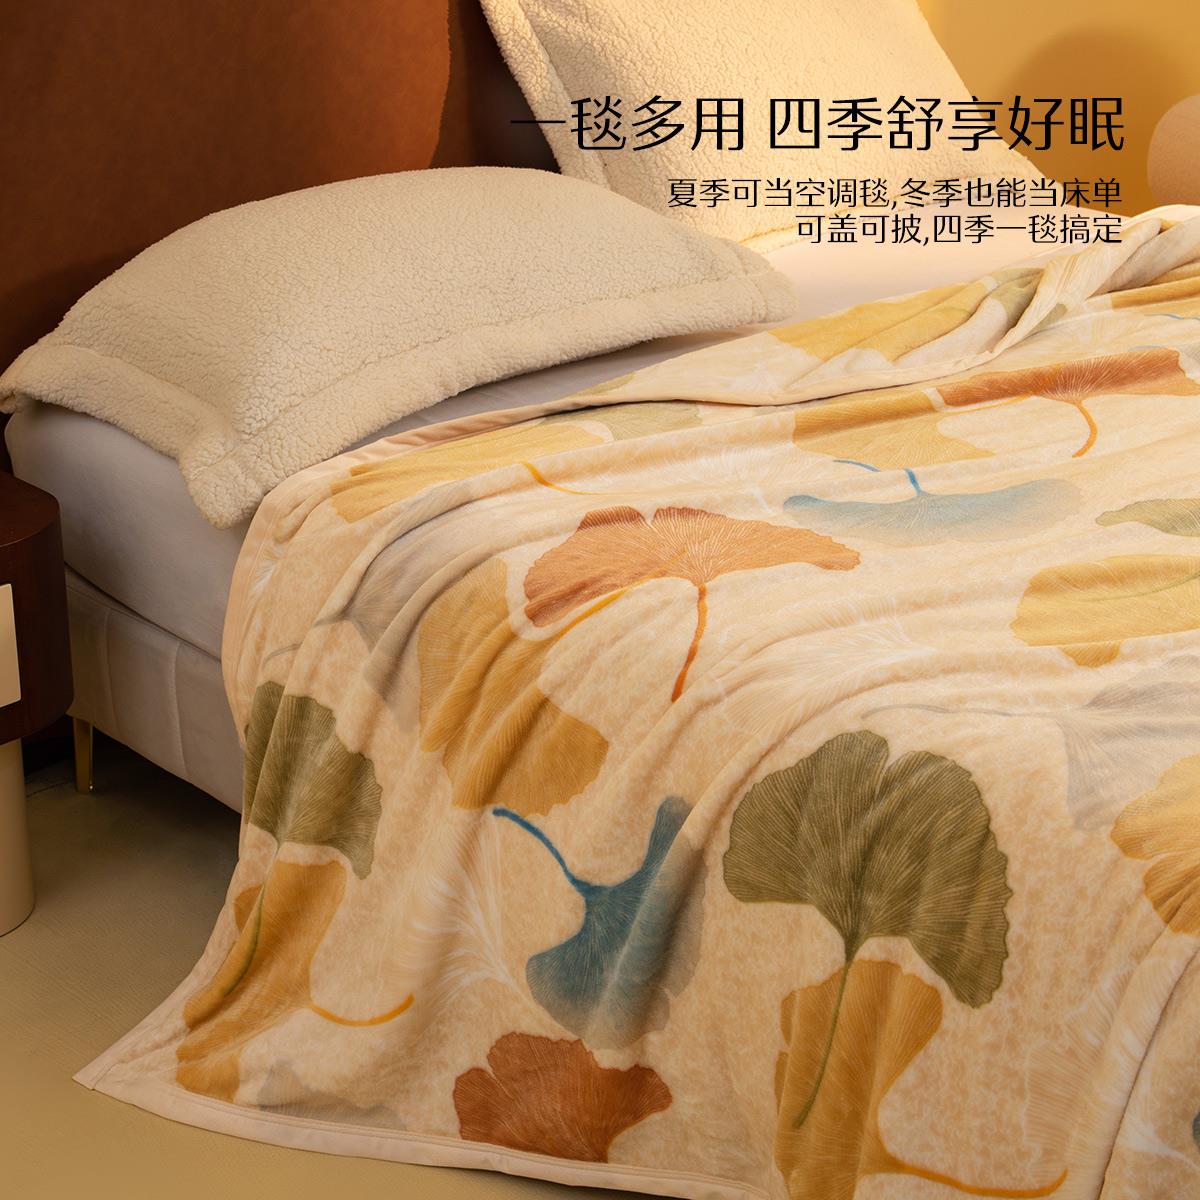 水星家纺毛毯凉感毯拉舍尔毯沙发毯子毛绒毯法兰绒毯午睡毯空调毯